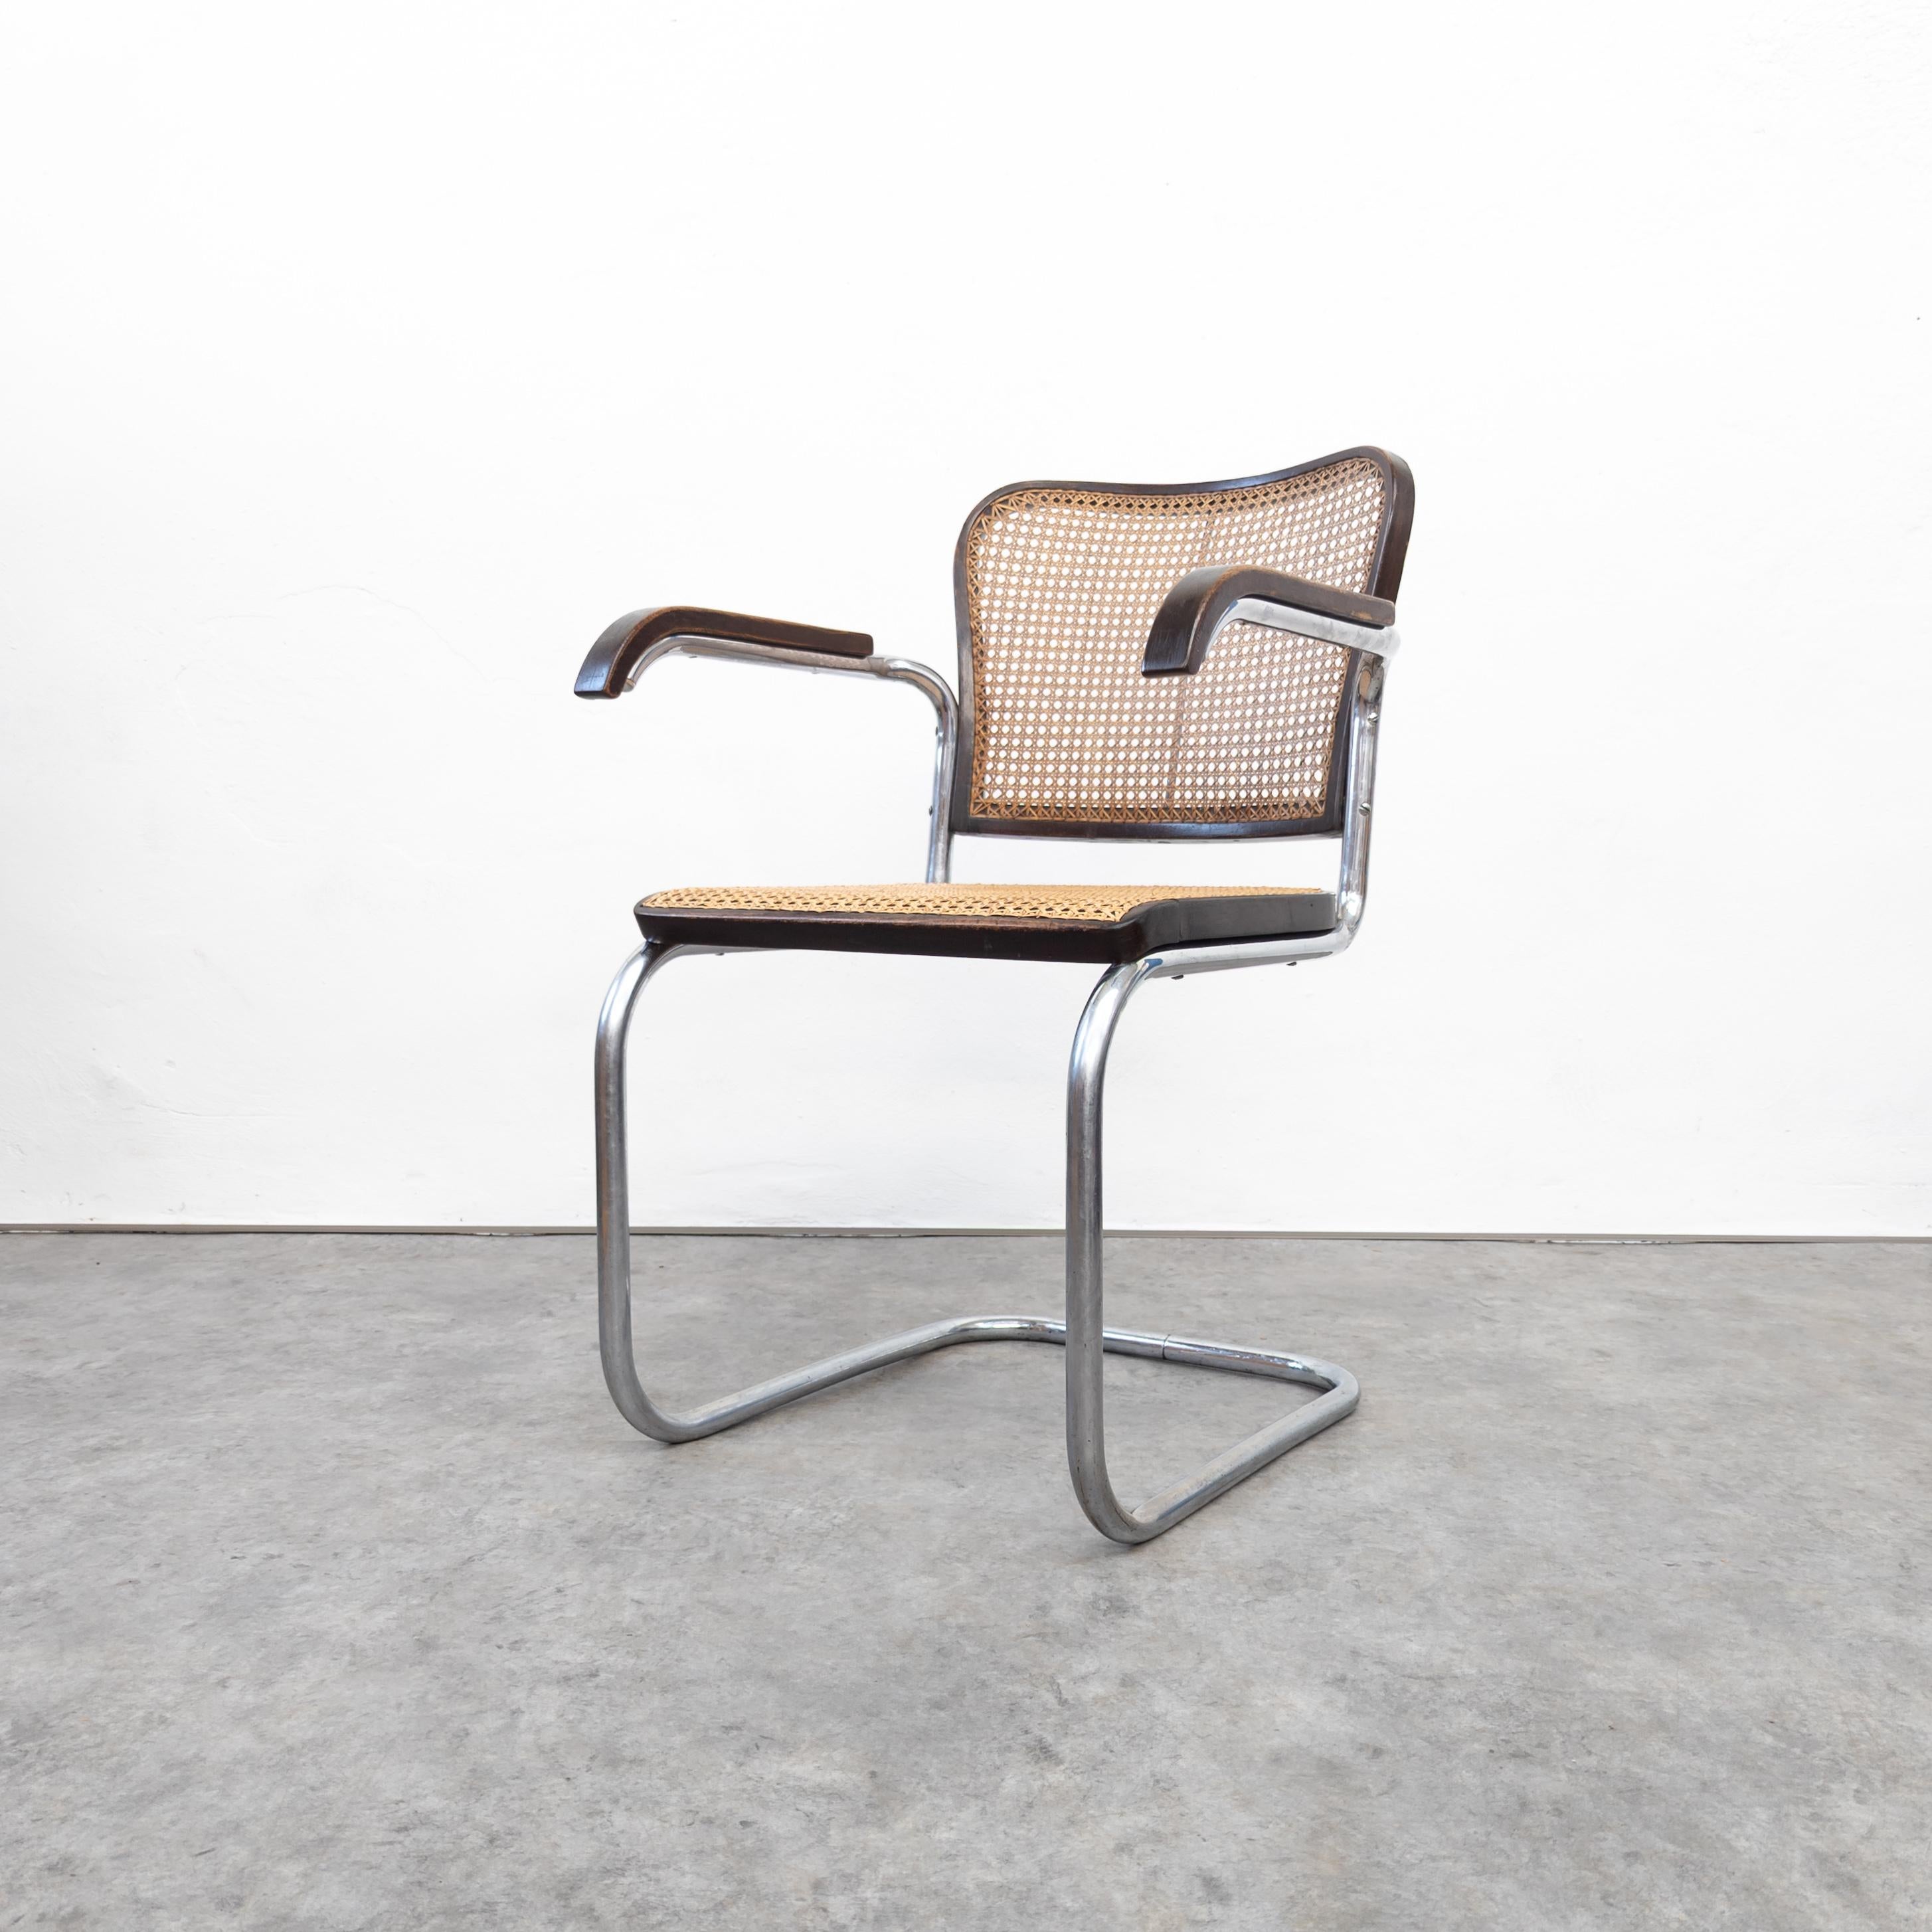 Variation du fauteuil Marcel Breuer S 64 de Robert Slezák. Très rare fauteuil fabriqué par la société Slezák à Bystritz, ancienne Tchécoslovaquie, dans les années 1930. Acier tubulaire chromé, bois de hêtre et canne. En très bon état d'origine, avec